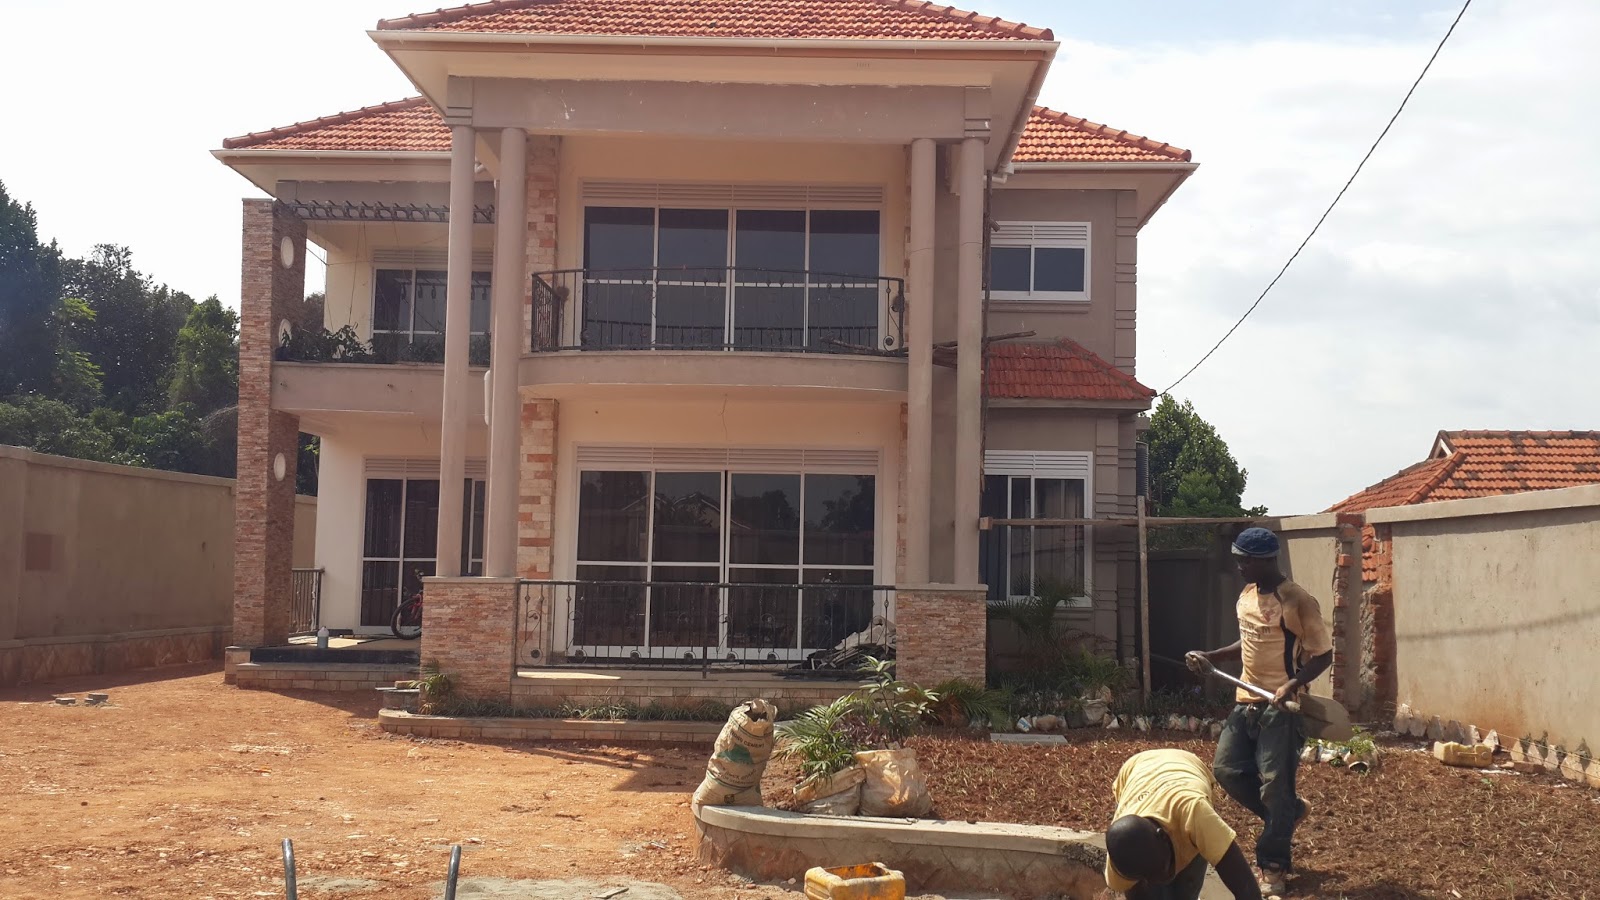 4 Bedroom House Plans In Uganda  Modern House